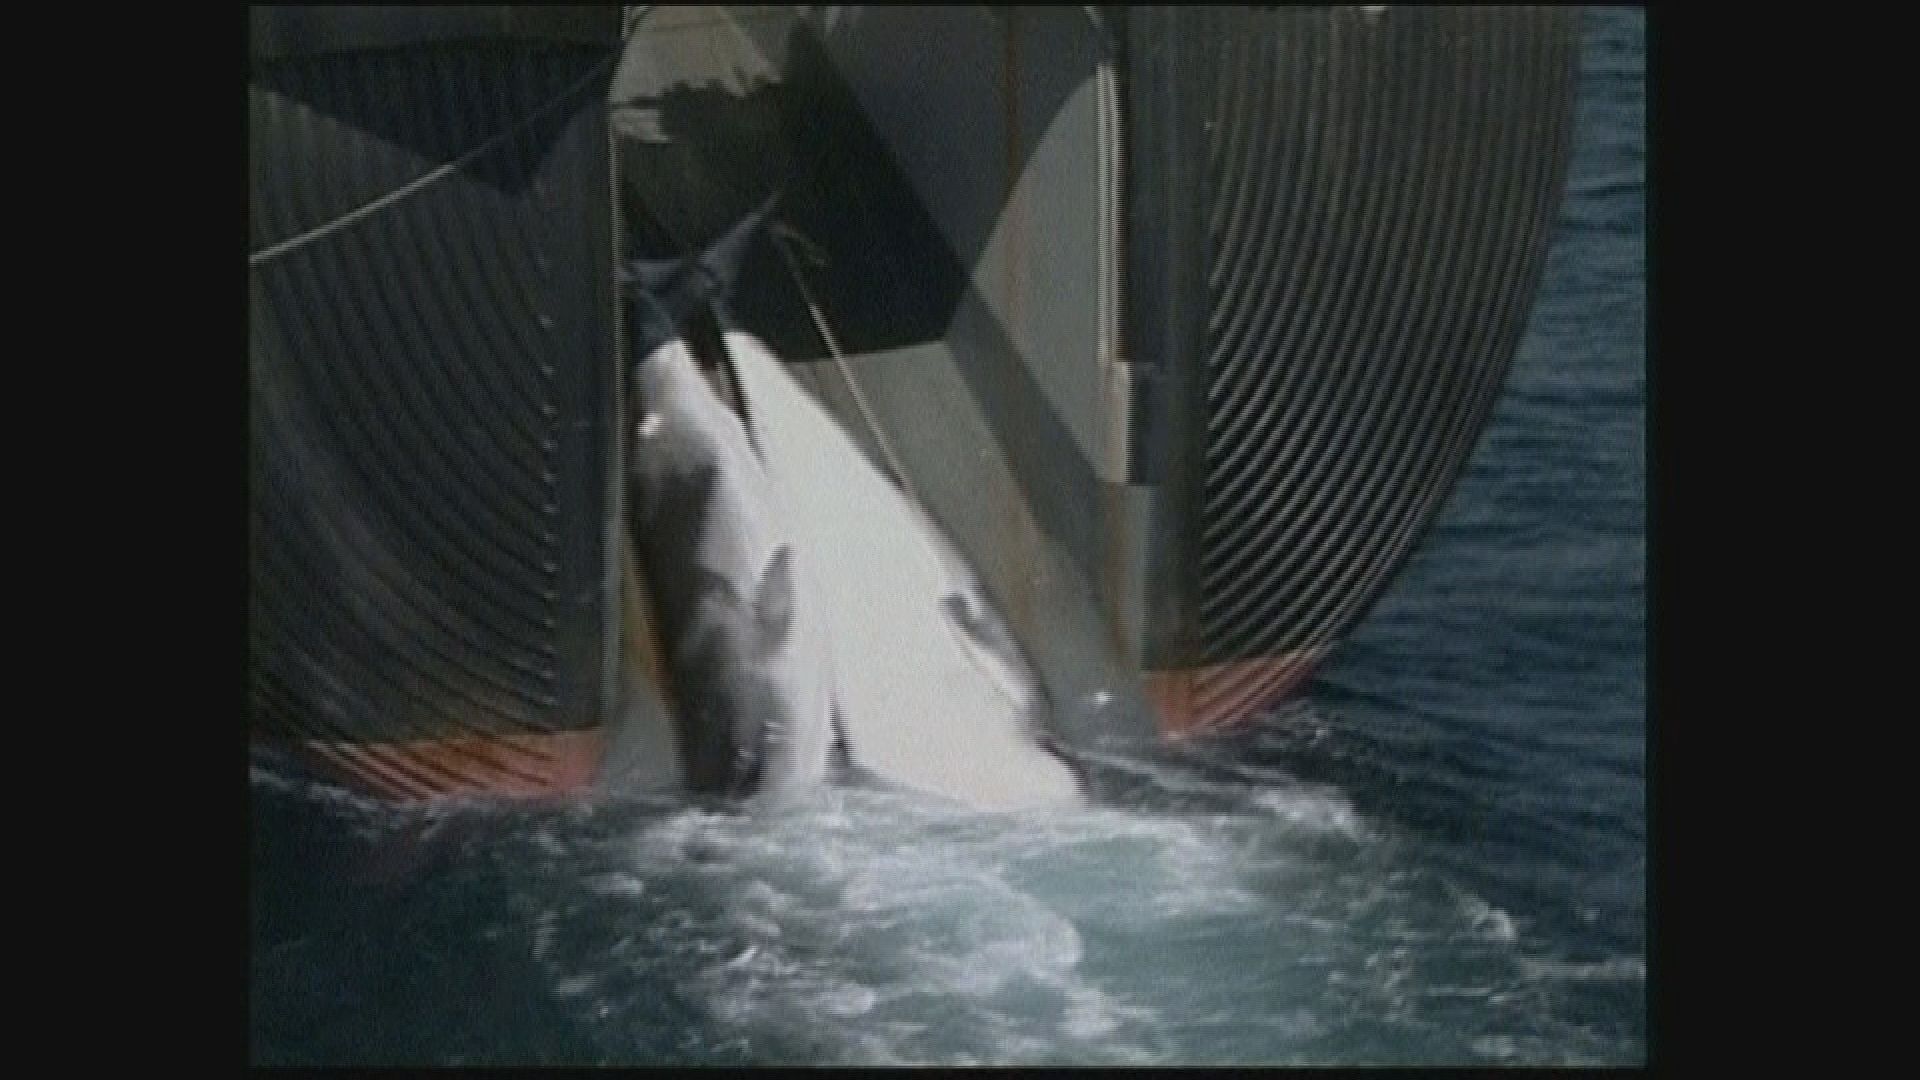 國際捕鯨委員會通過捕鯨不再具商業價值